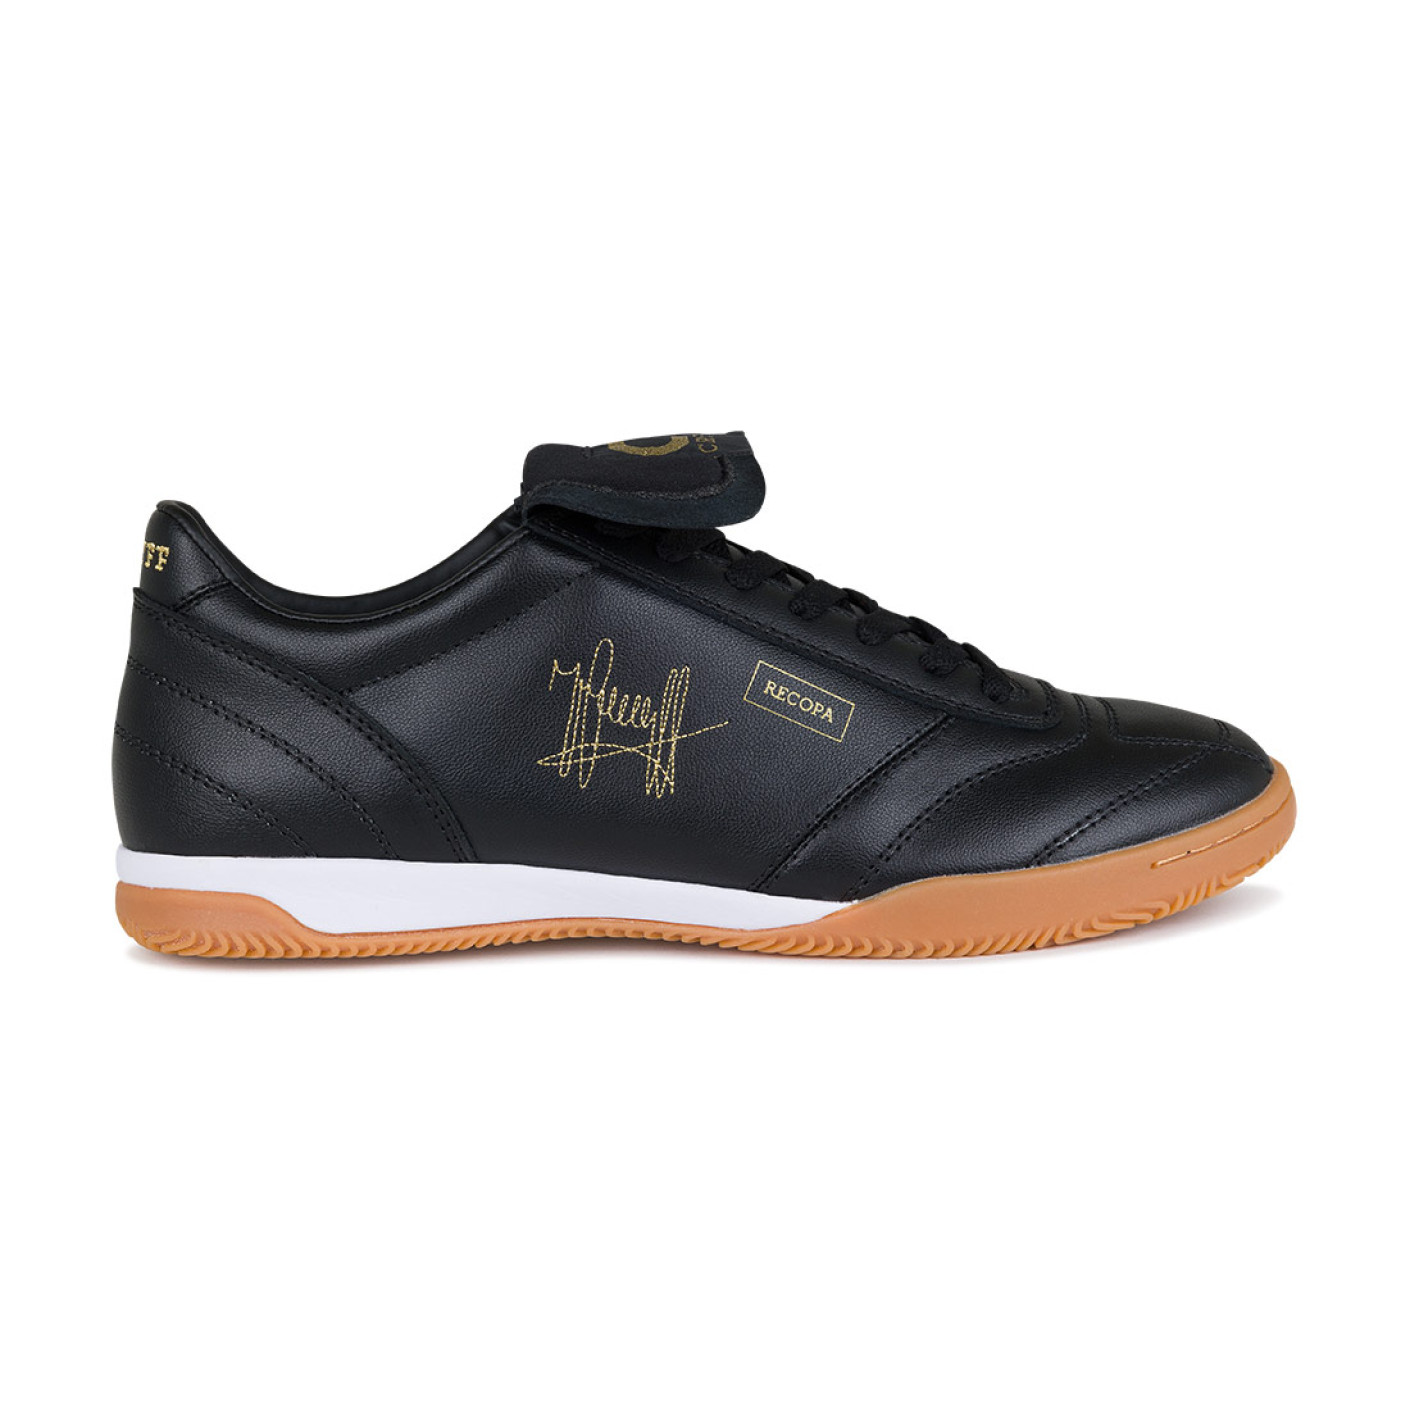 Chaussures de football intérieur Cruyff Retro Futsal (IN) noires dorées